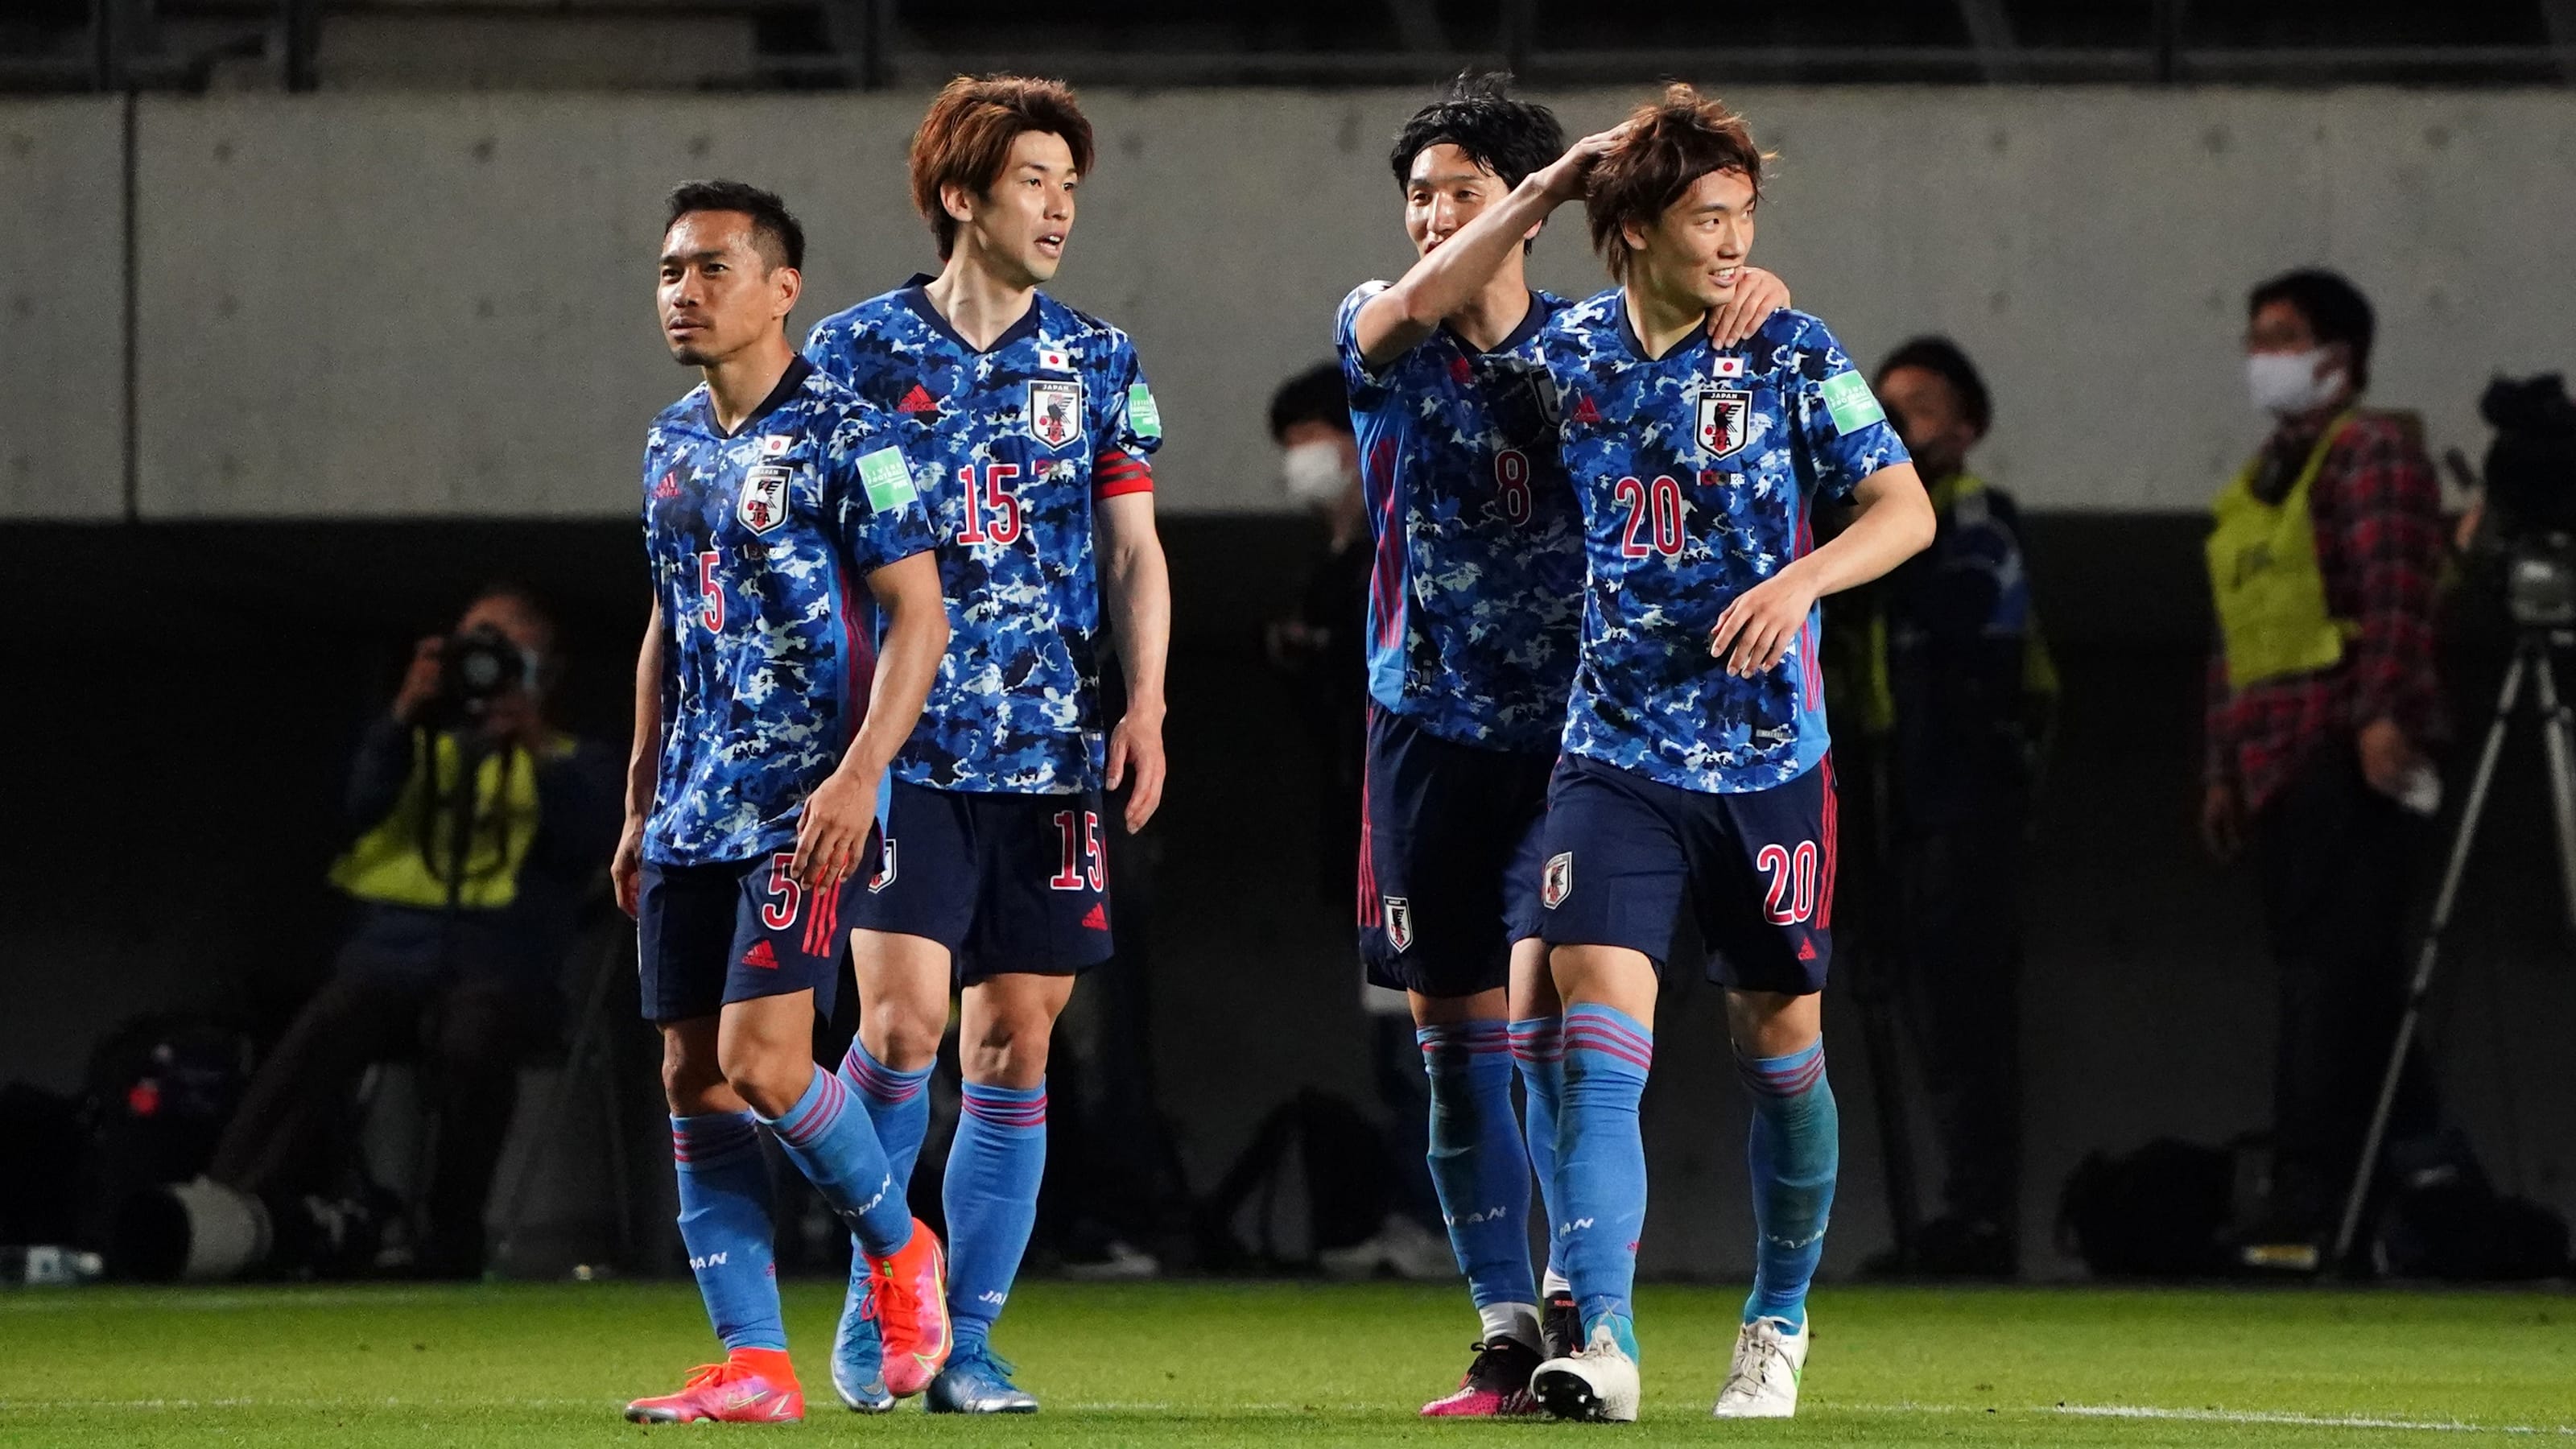 サッカー キリンc杯 日本 対 ジャマイカが中止 代替で日本代表 対 U 24日本代表を実施